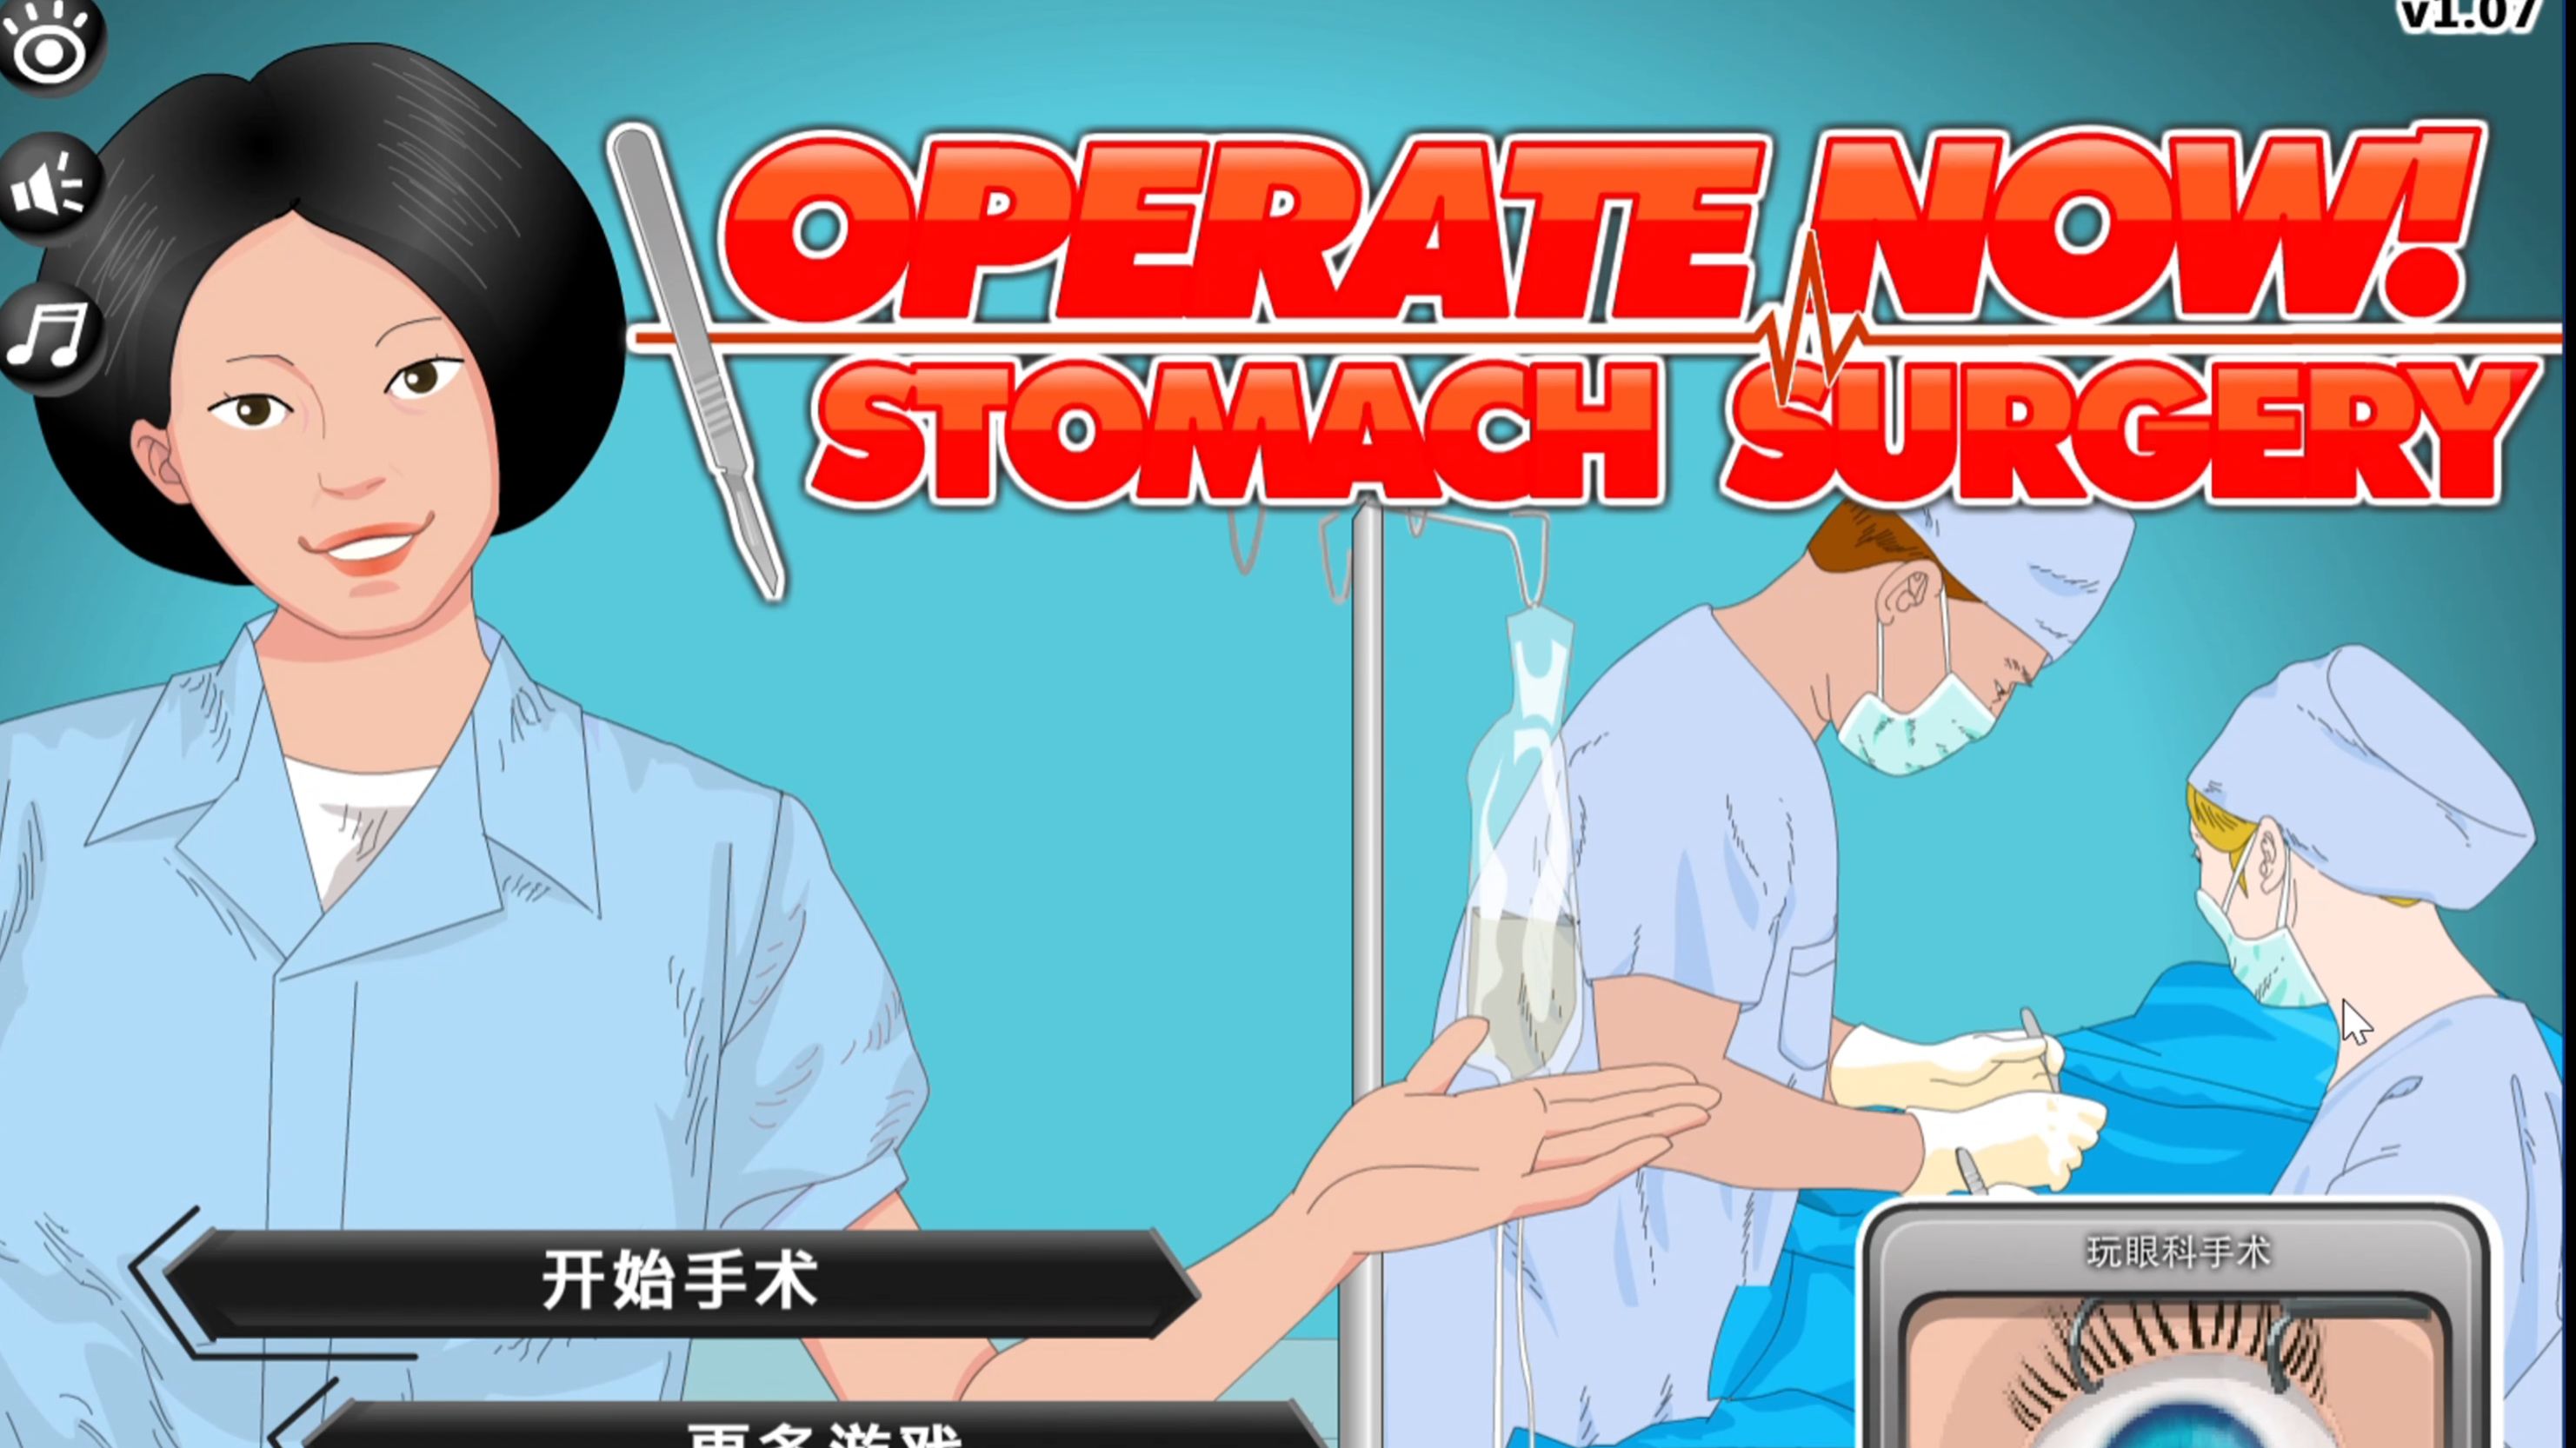 【测试版演示】胃部手术 